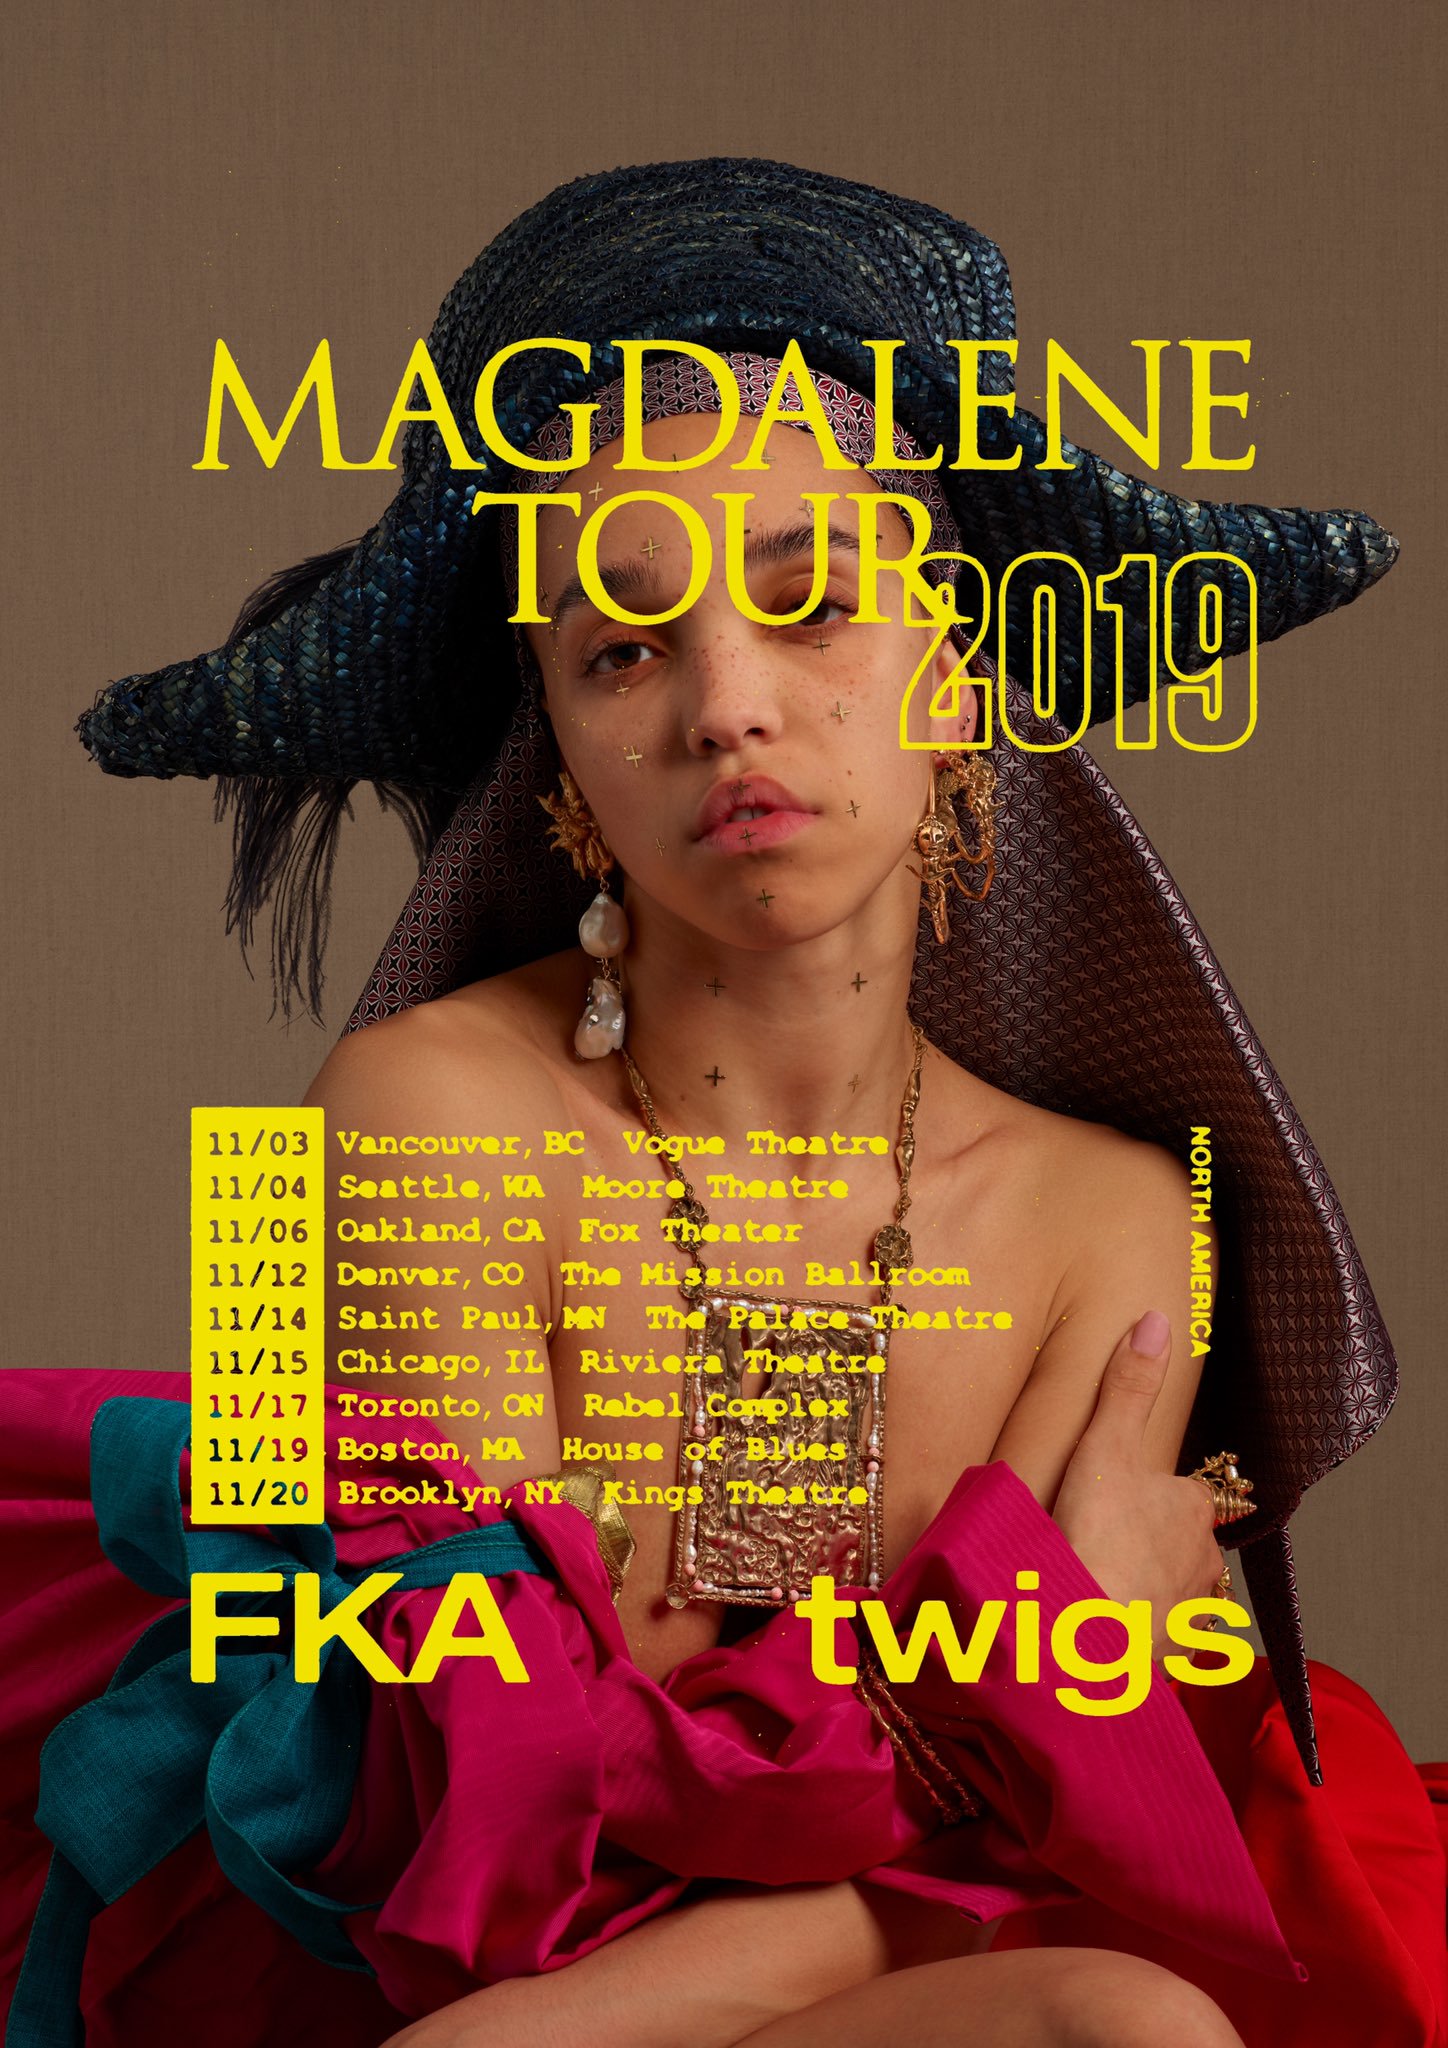 fka twigs tour dates